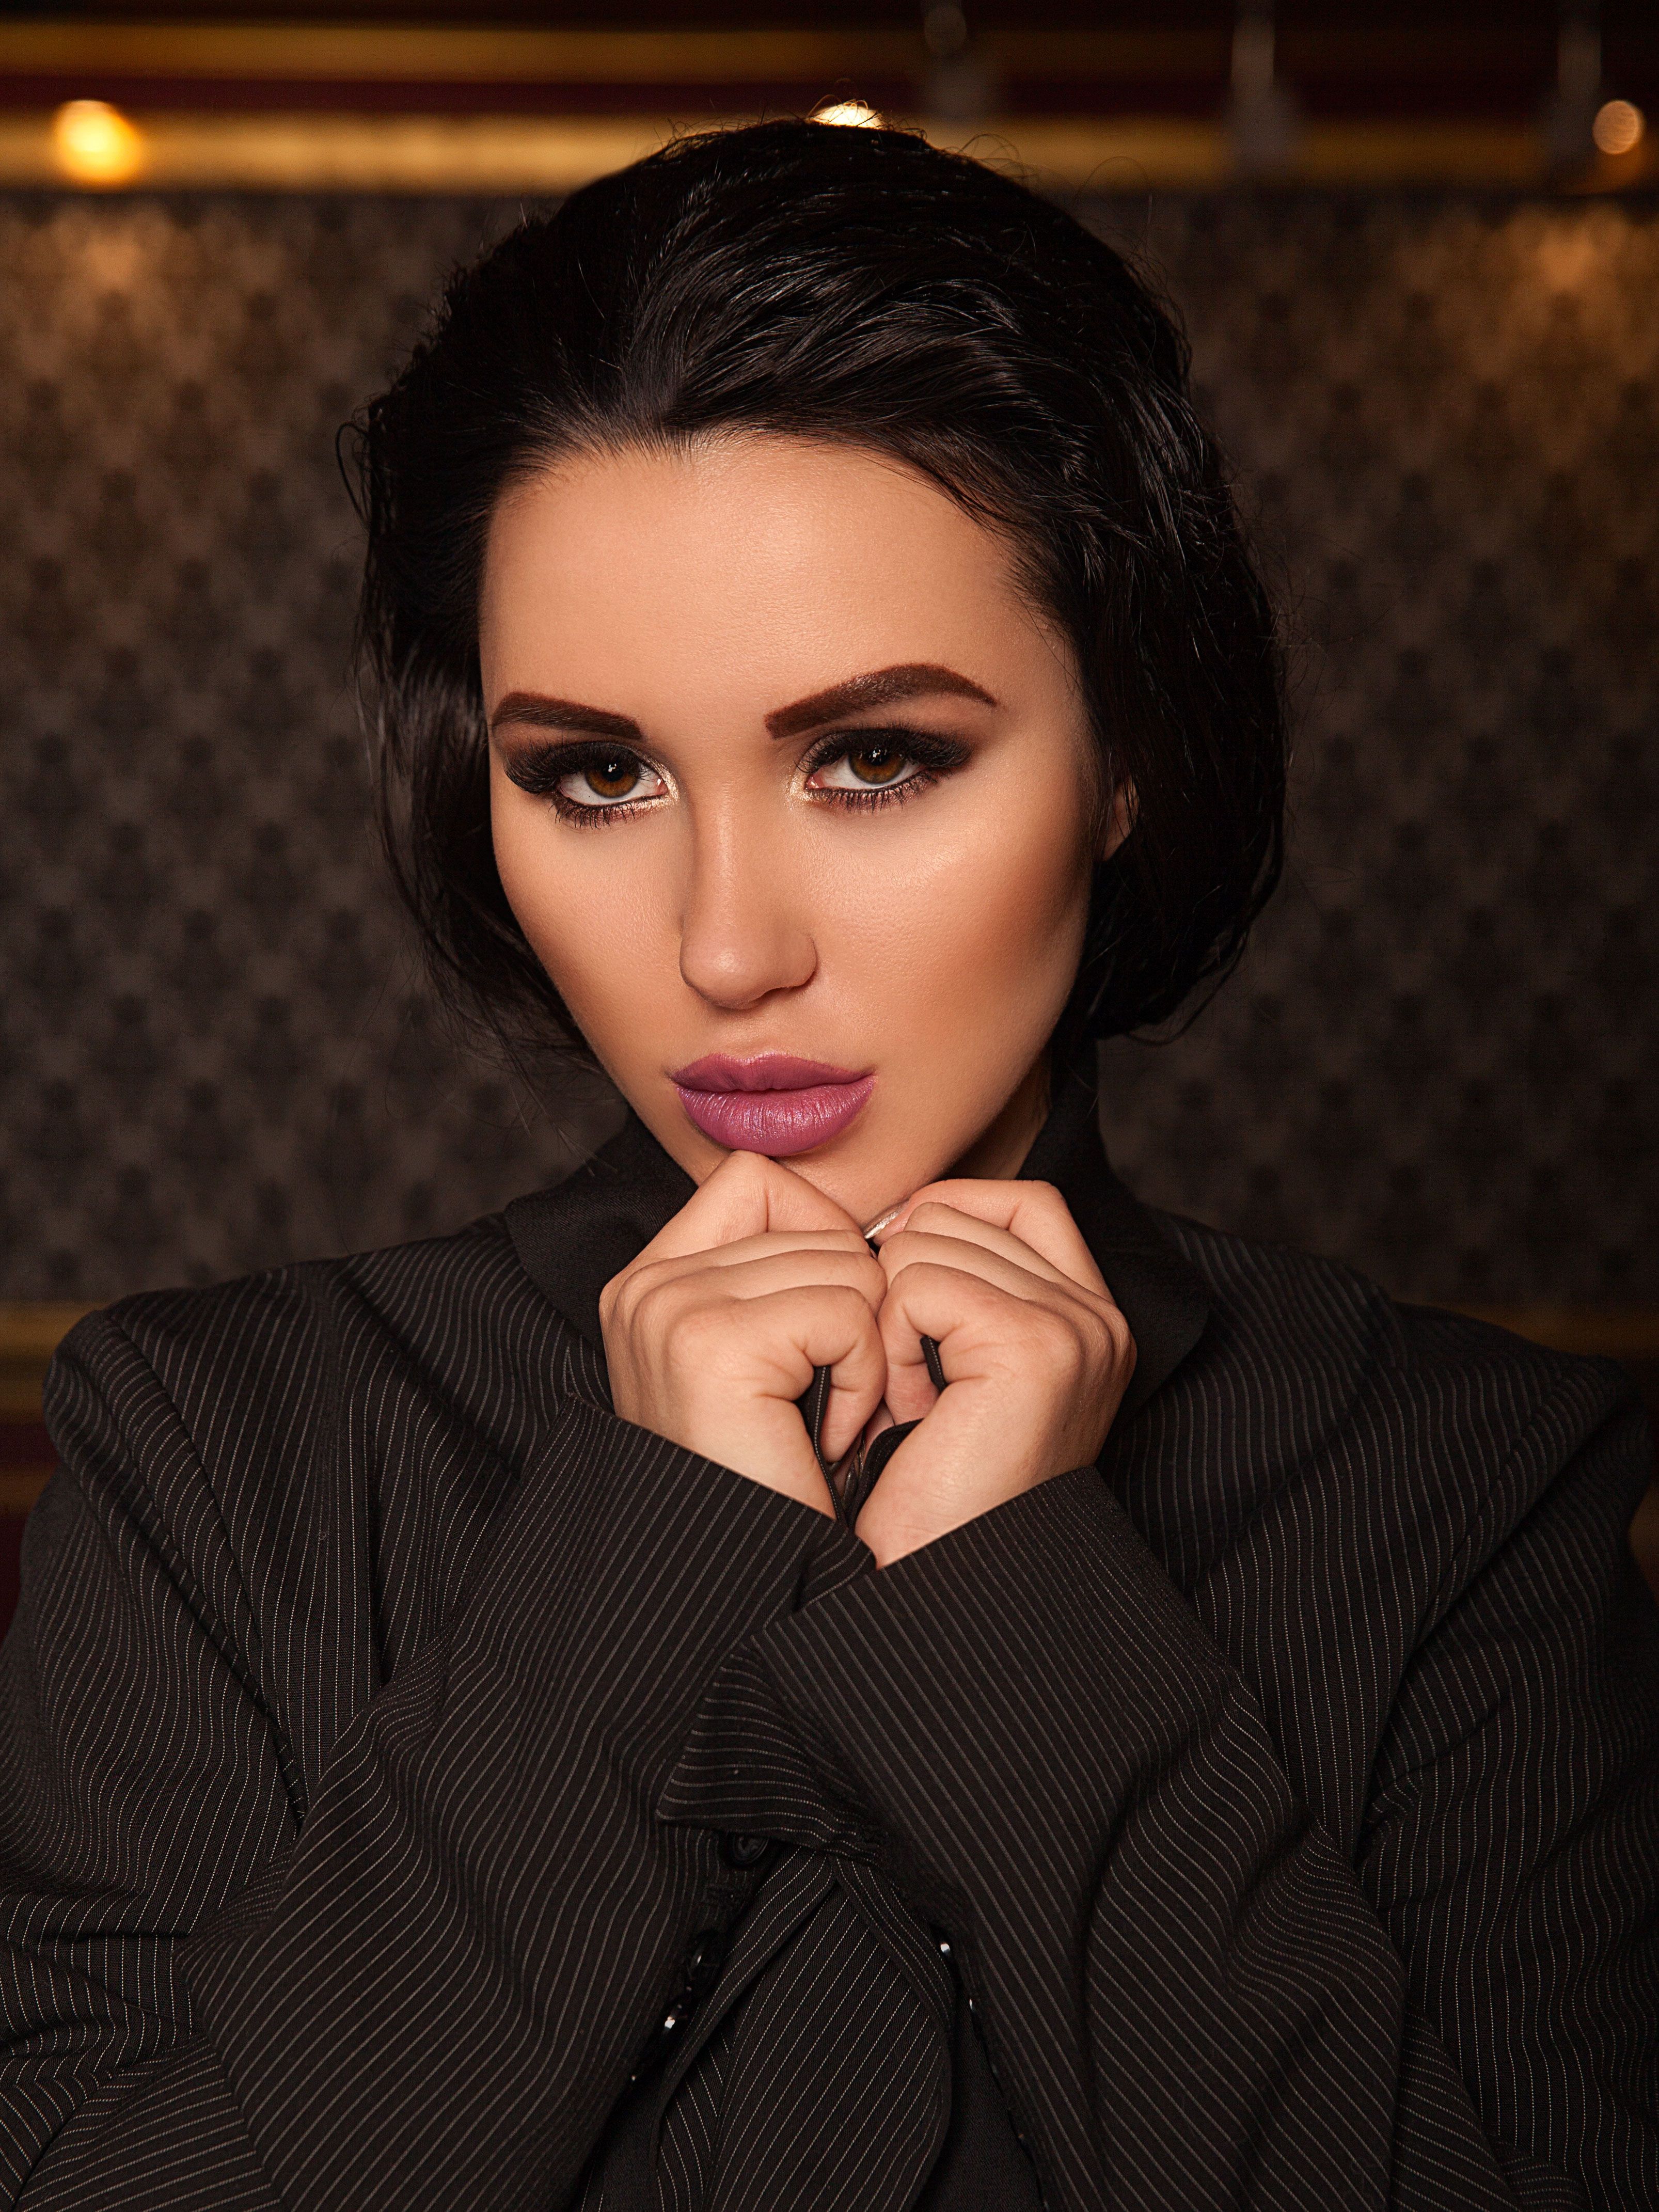 Анастасия Рафаловская (Anastasiya Rafalovskaya) Фото - модель, главный редактору журнала Ballare magazine